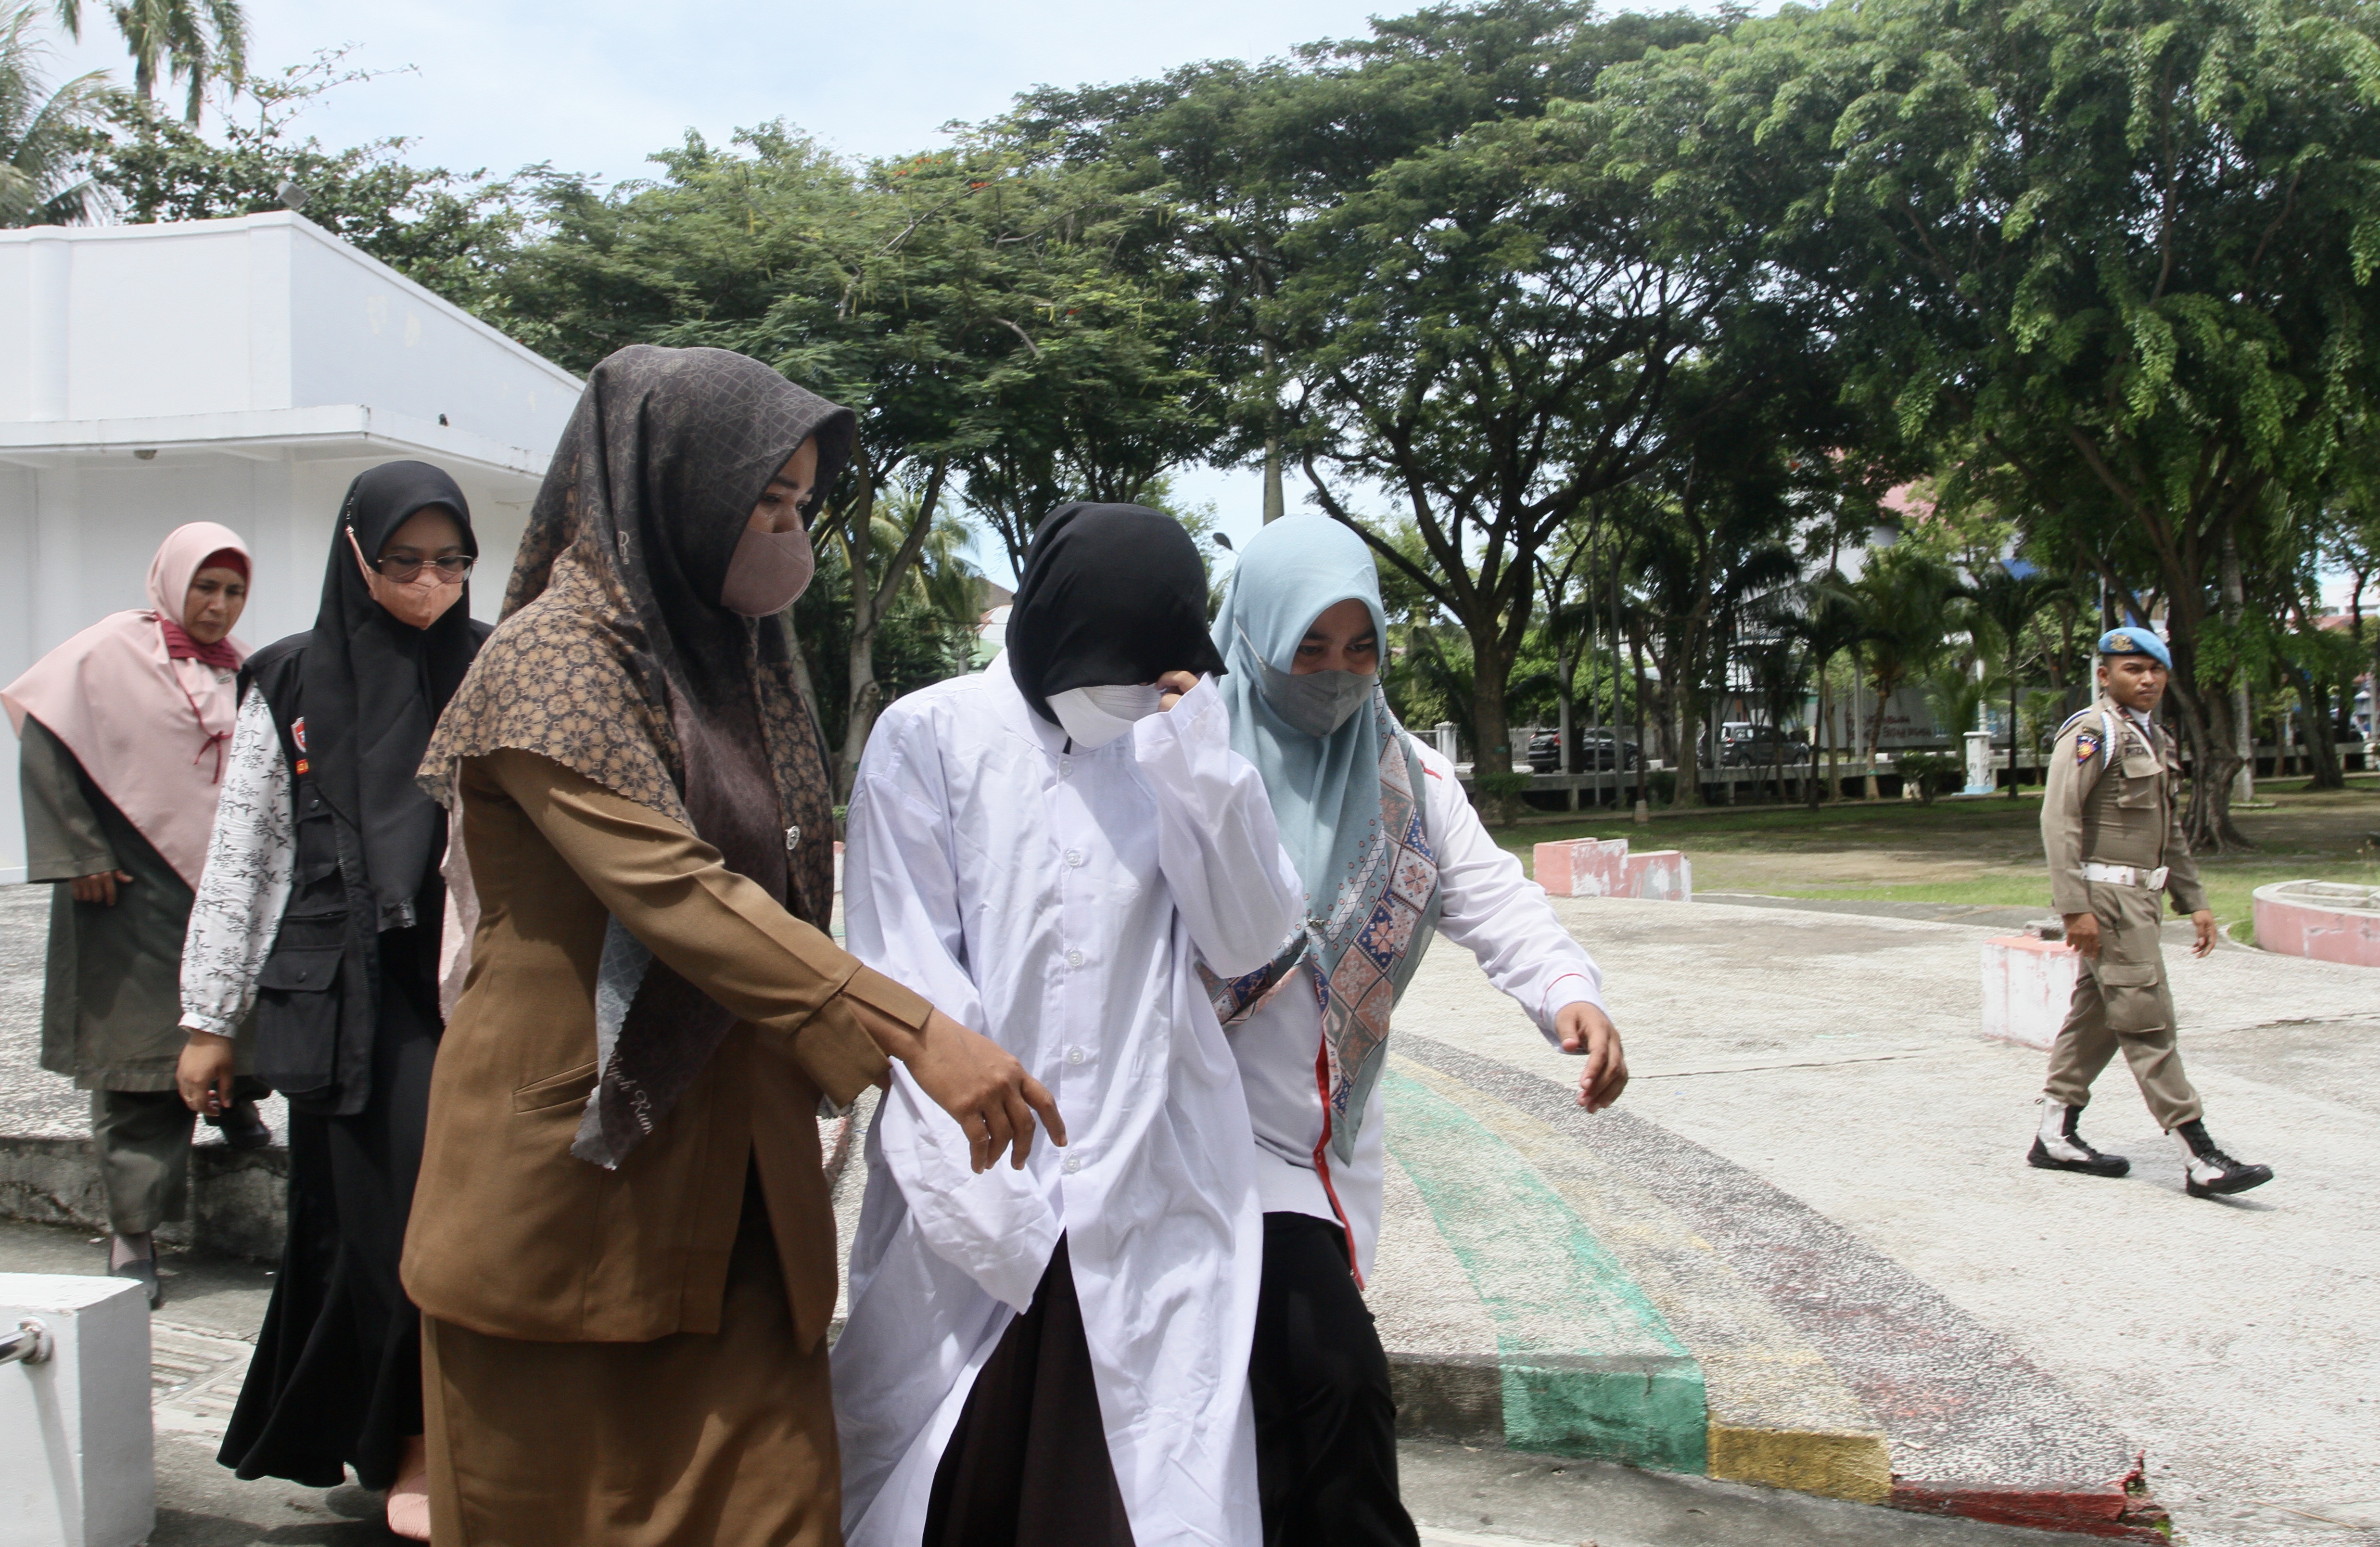 Perempuan bergamis putih yang mengenakan masker putih dan jilbab hitam dituntun dua orang perempuan